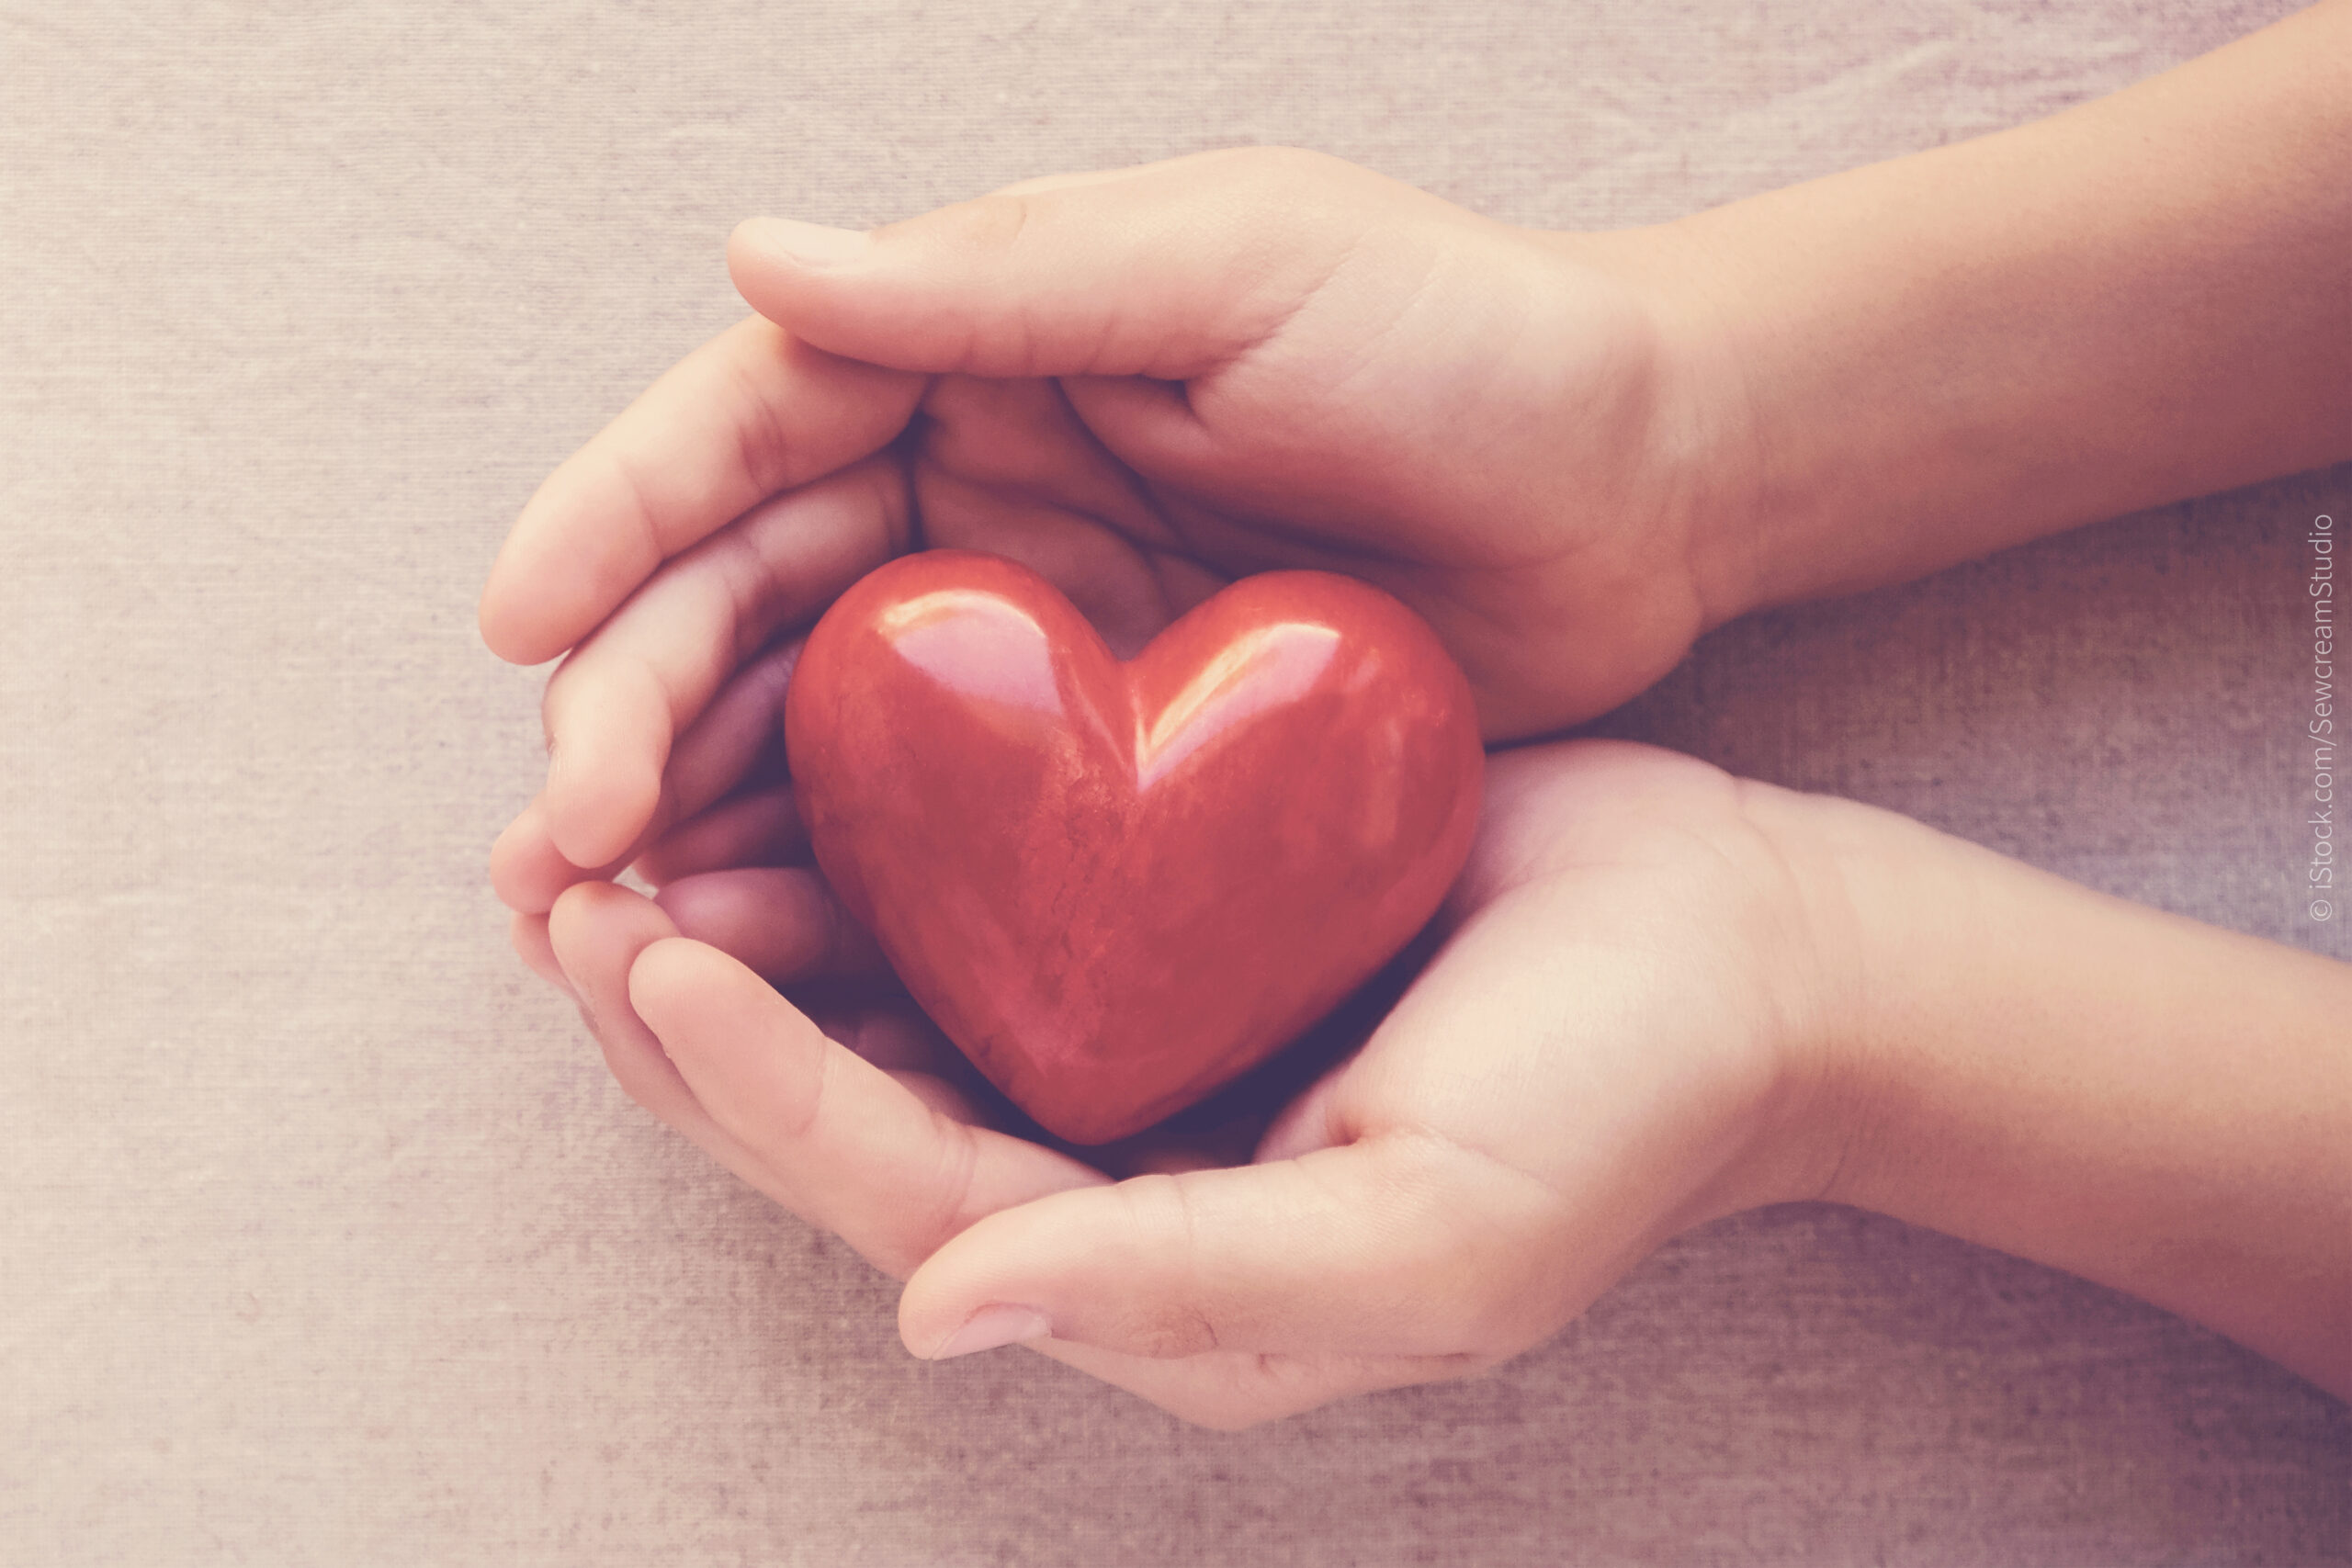 Ein Herz in zwei Händen. Blogbild zum Thema: "Liebt Gott mich?"